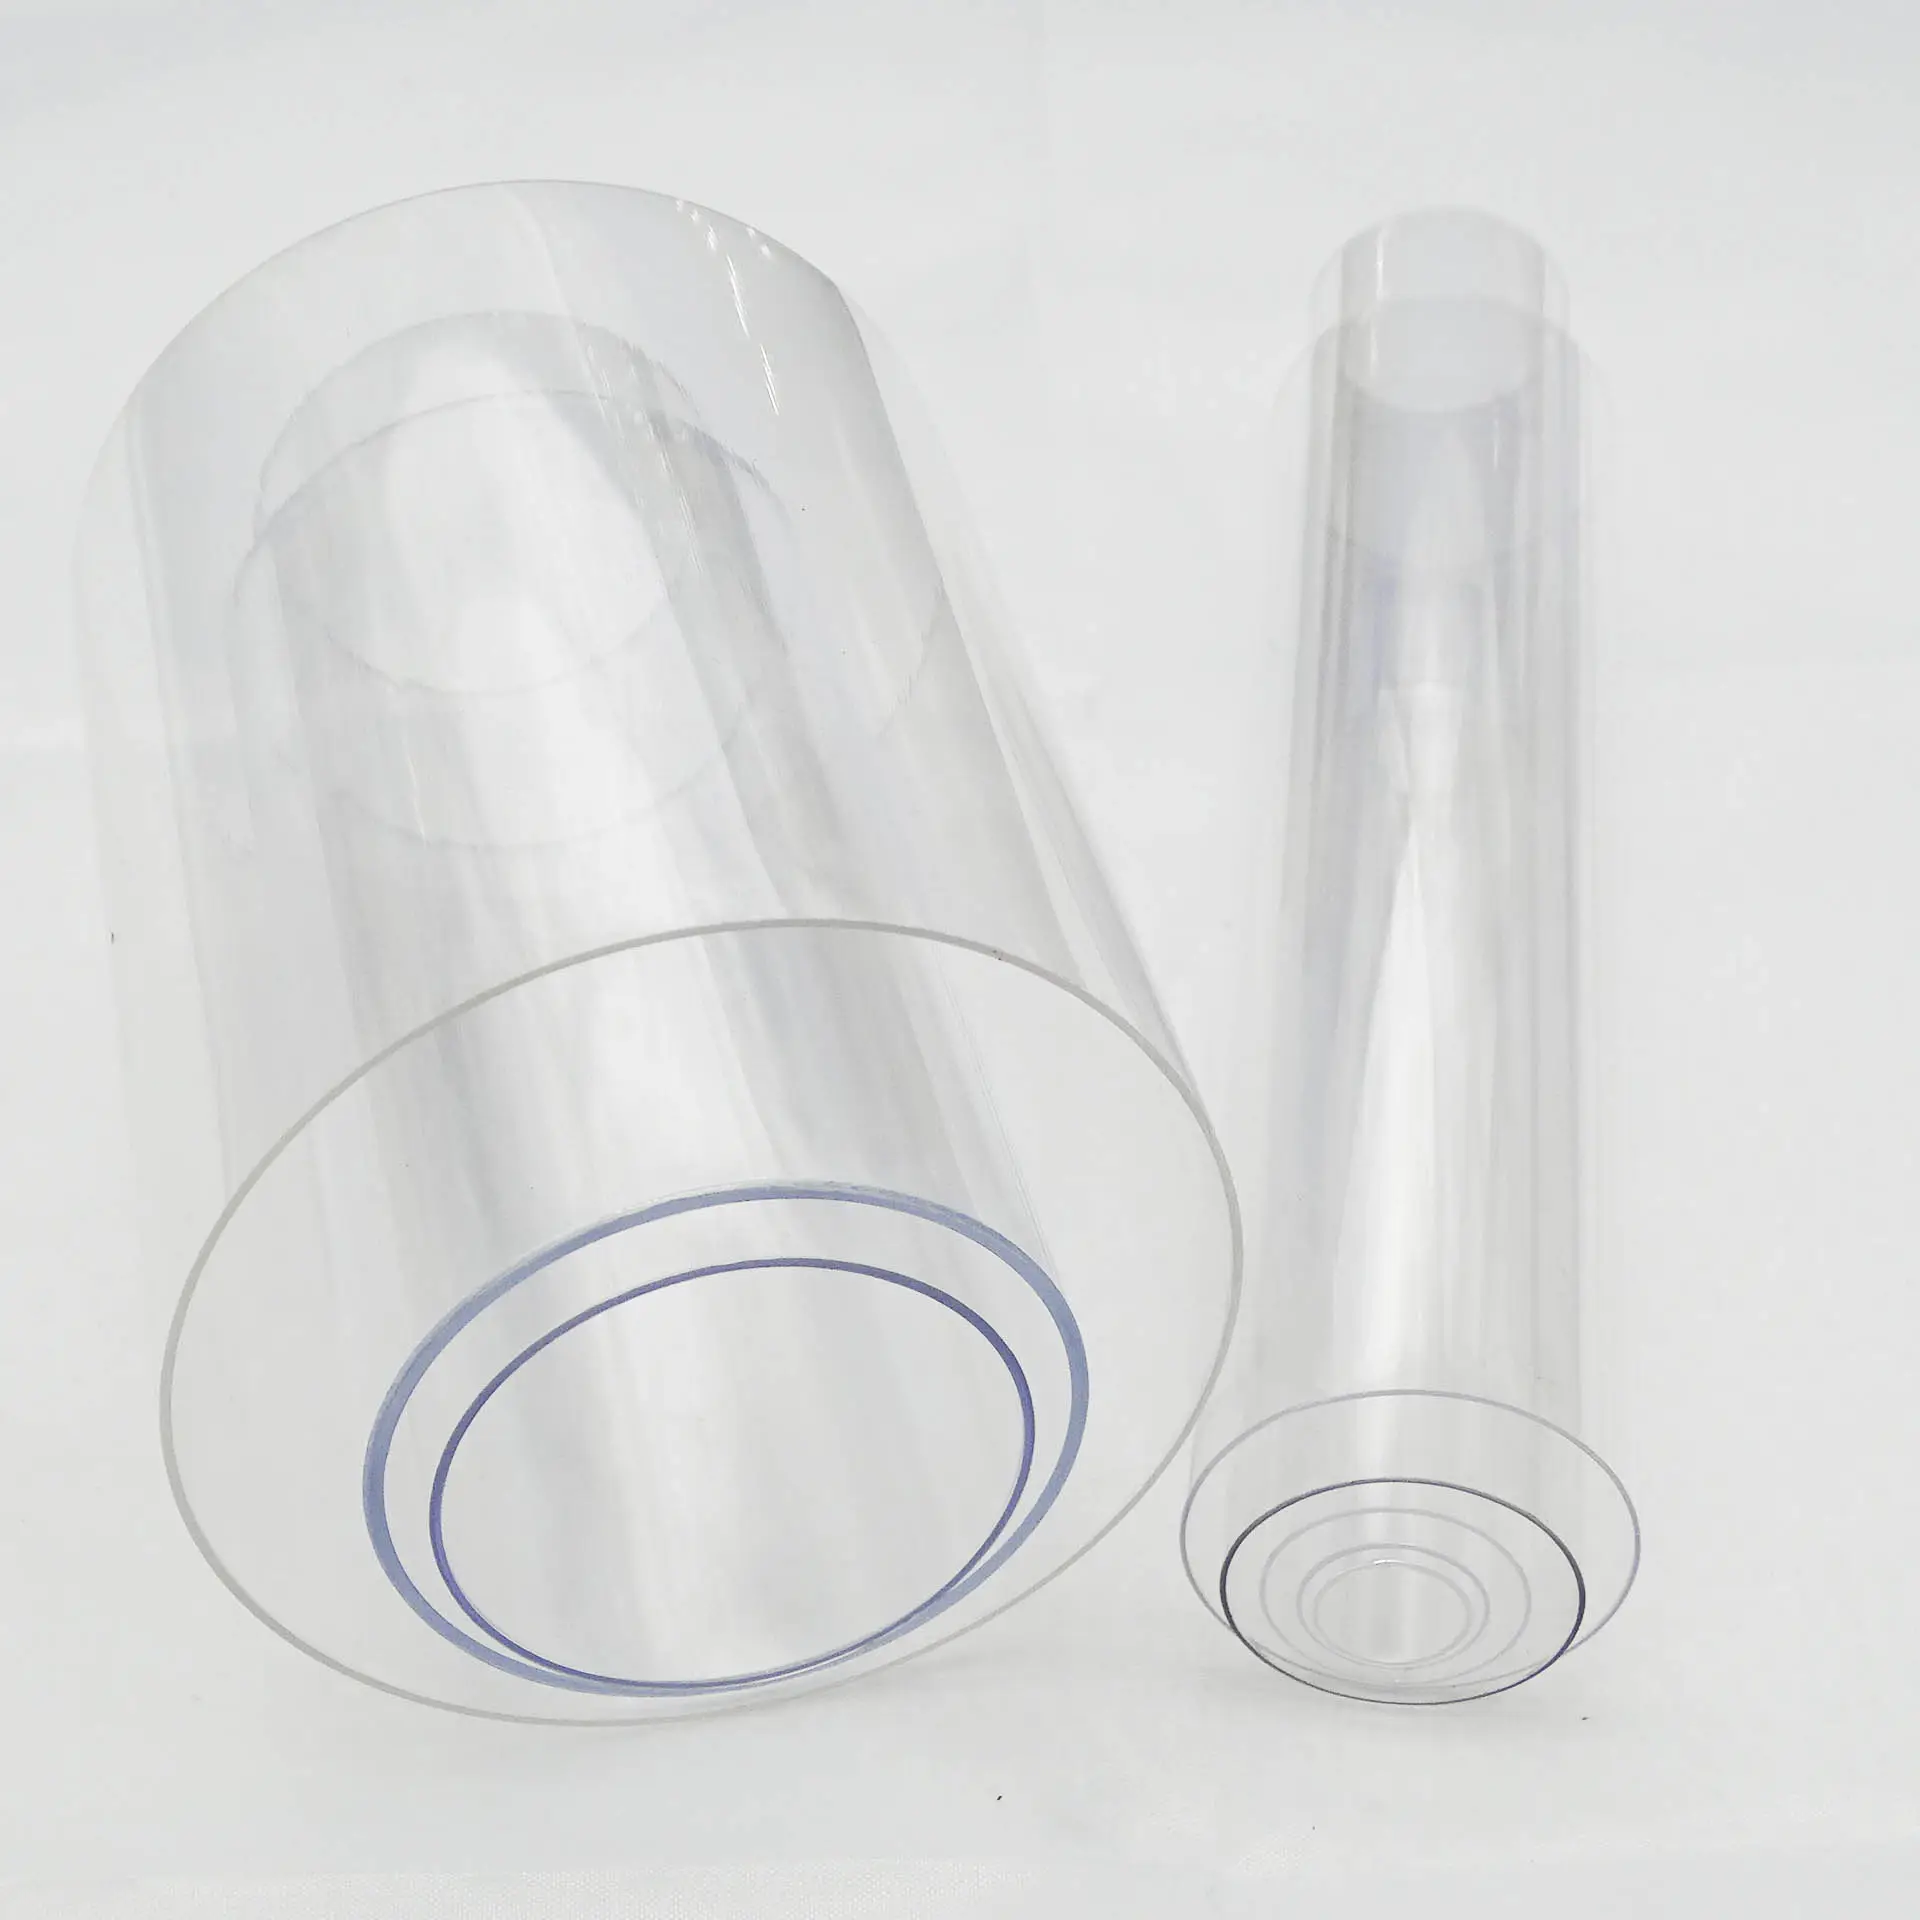 Pièce PC Tube PC en plastique Tube PC transparent en plastique polycarbonate pur PC sérigraphie cylindre transparent personnalisé accepté